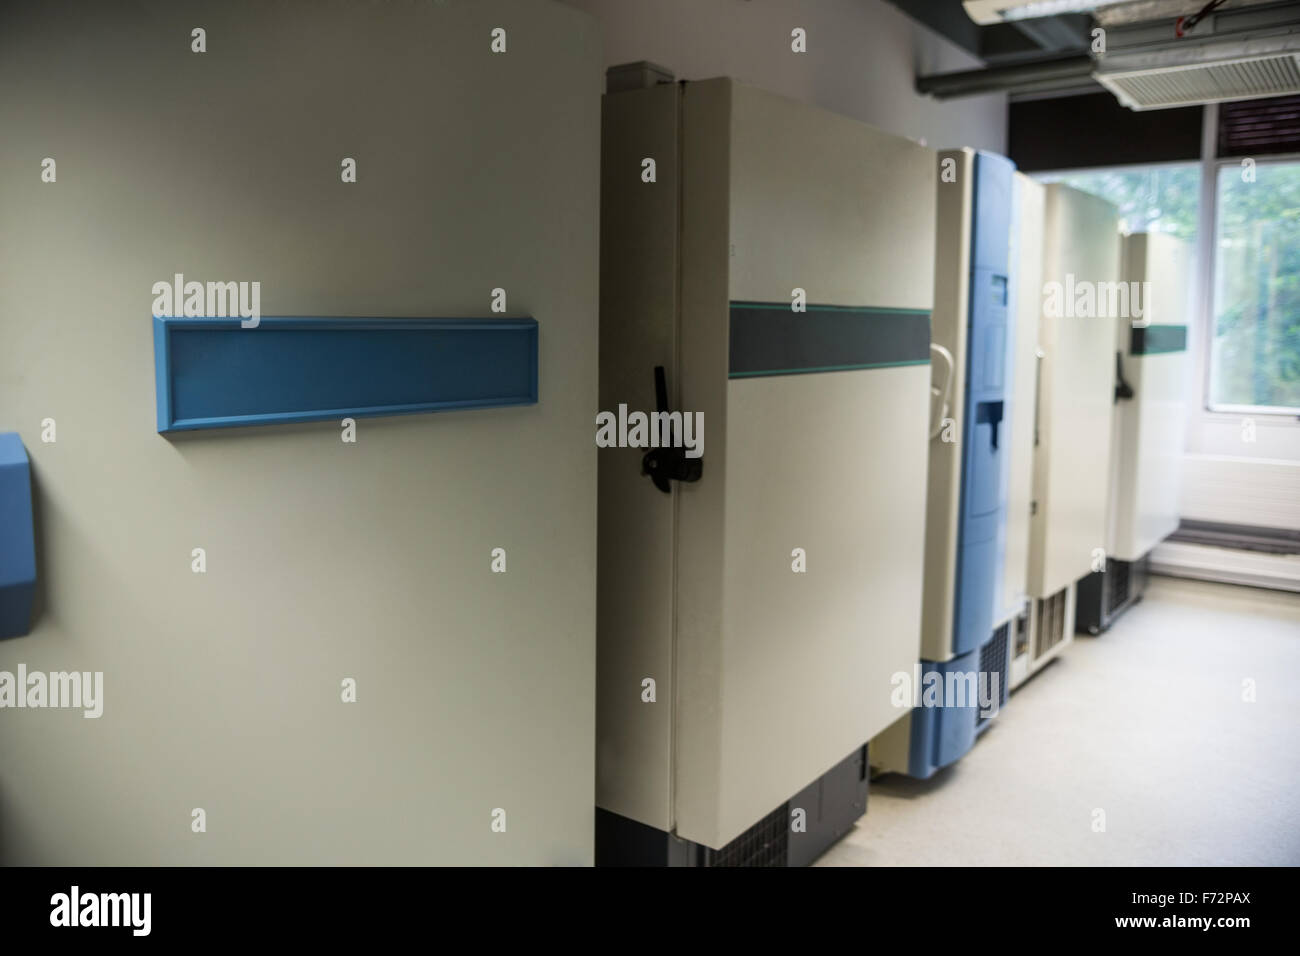 Large fridge units Stock Photo